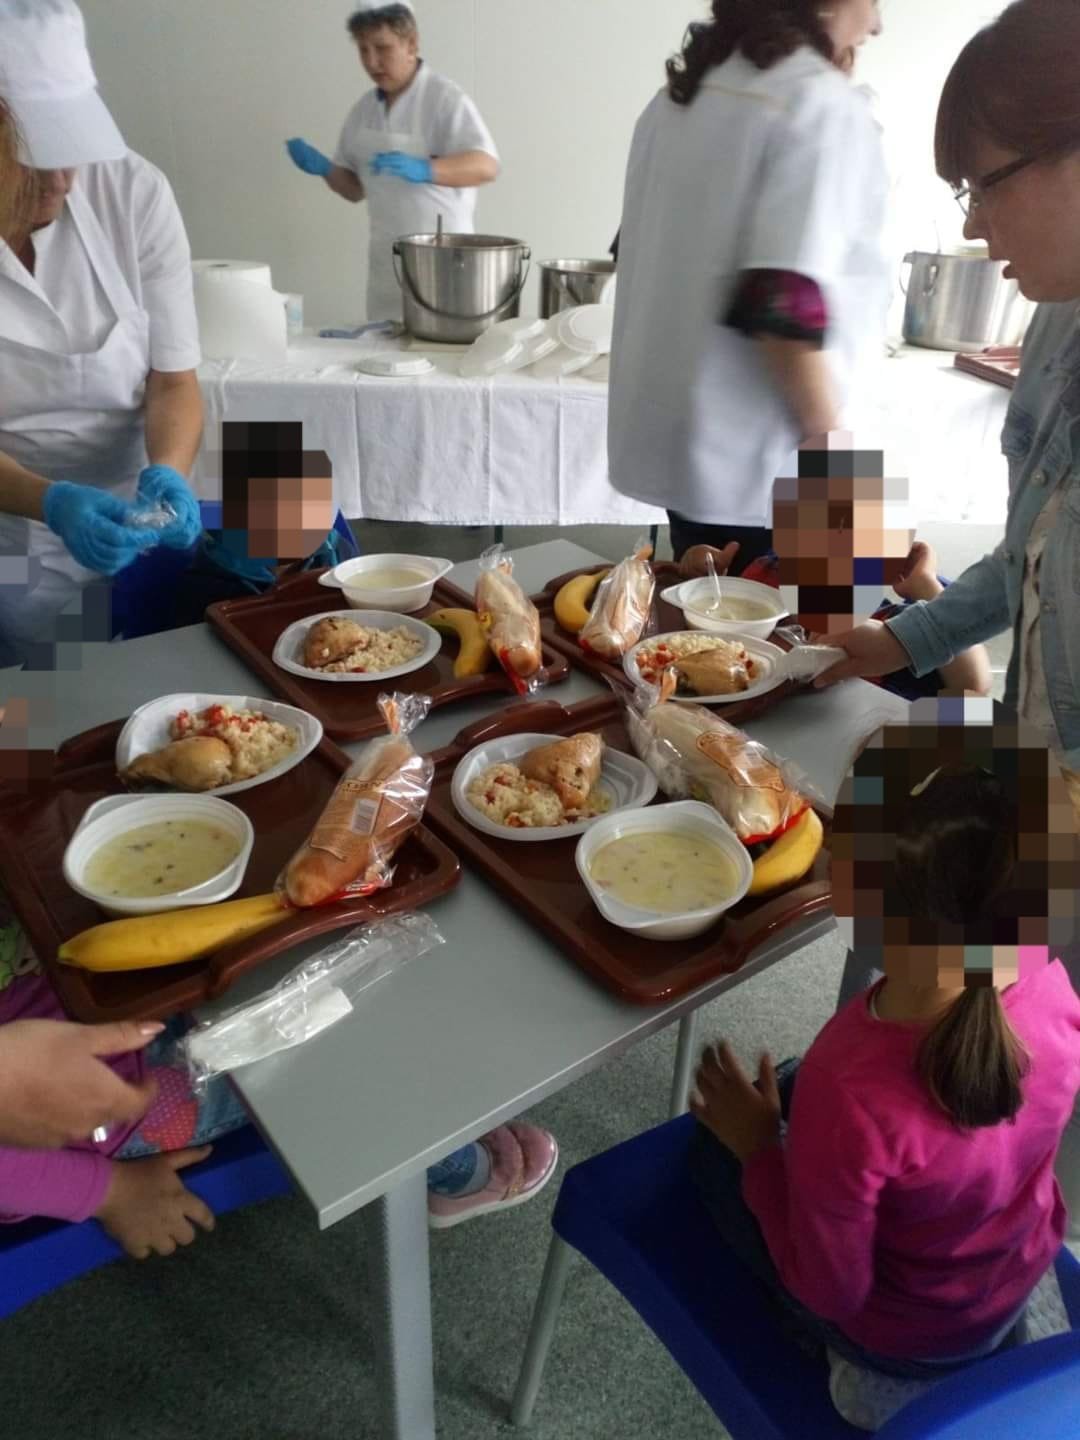 Circa 1600 de preșcolari și elevi din municipiu vor primi gratuit o masă caldă sau pachete alimentare